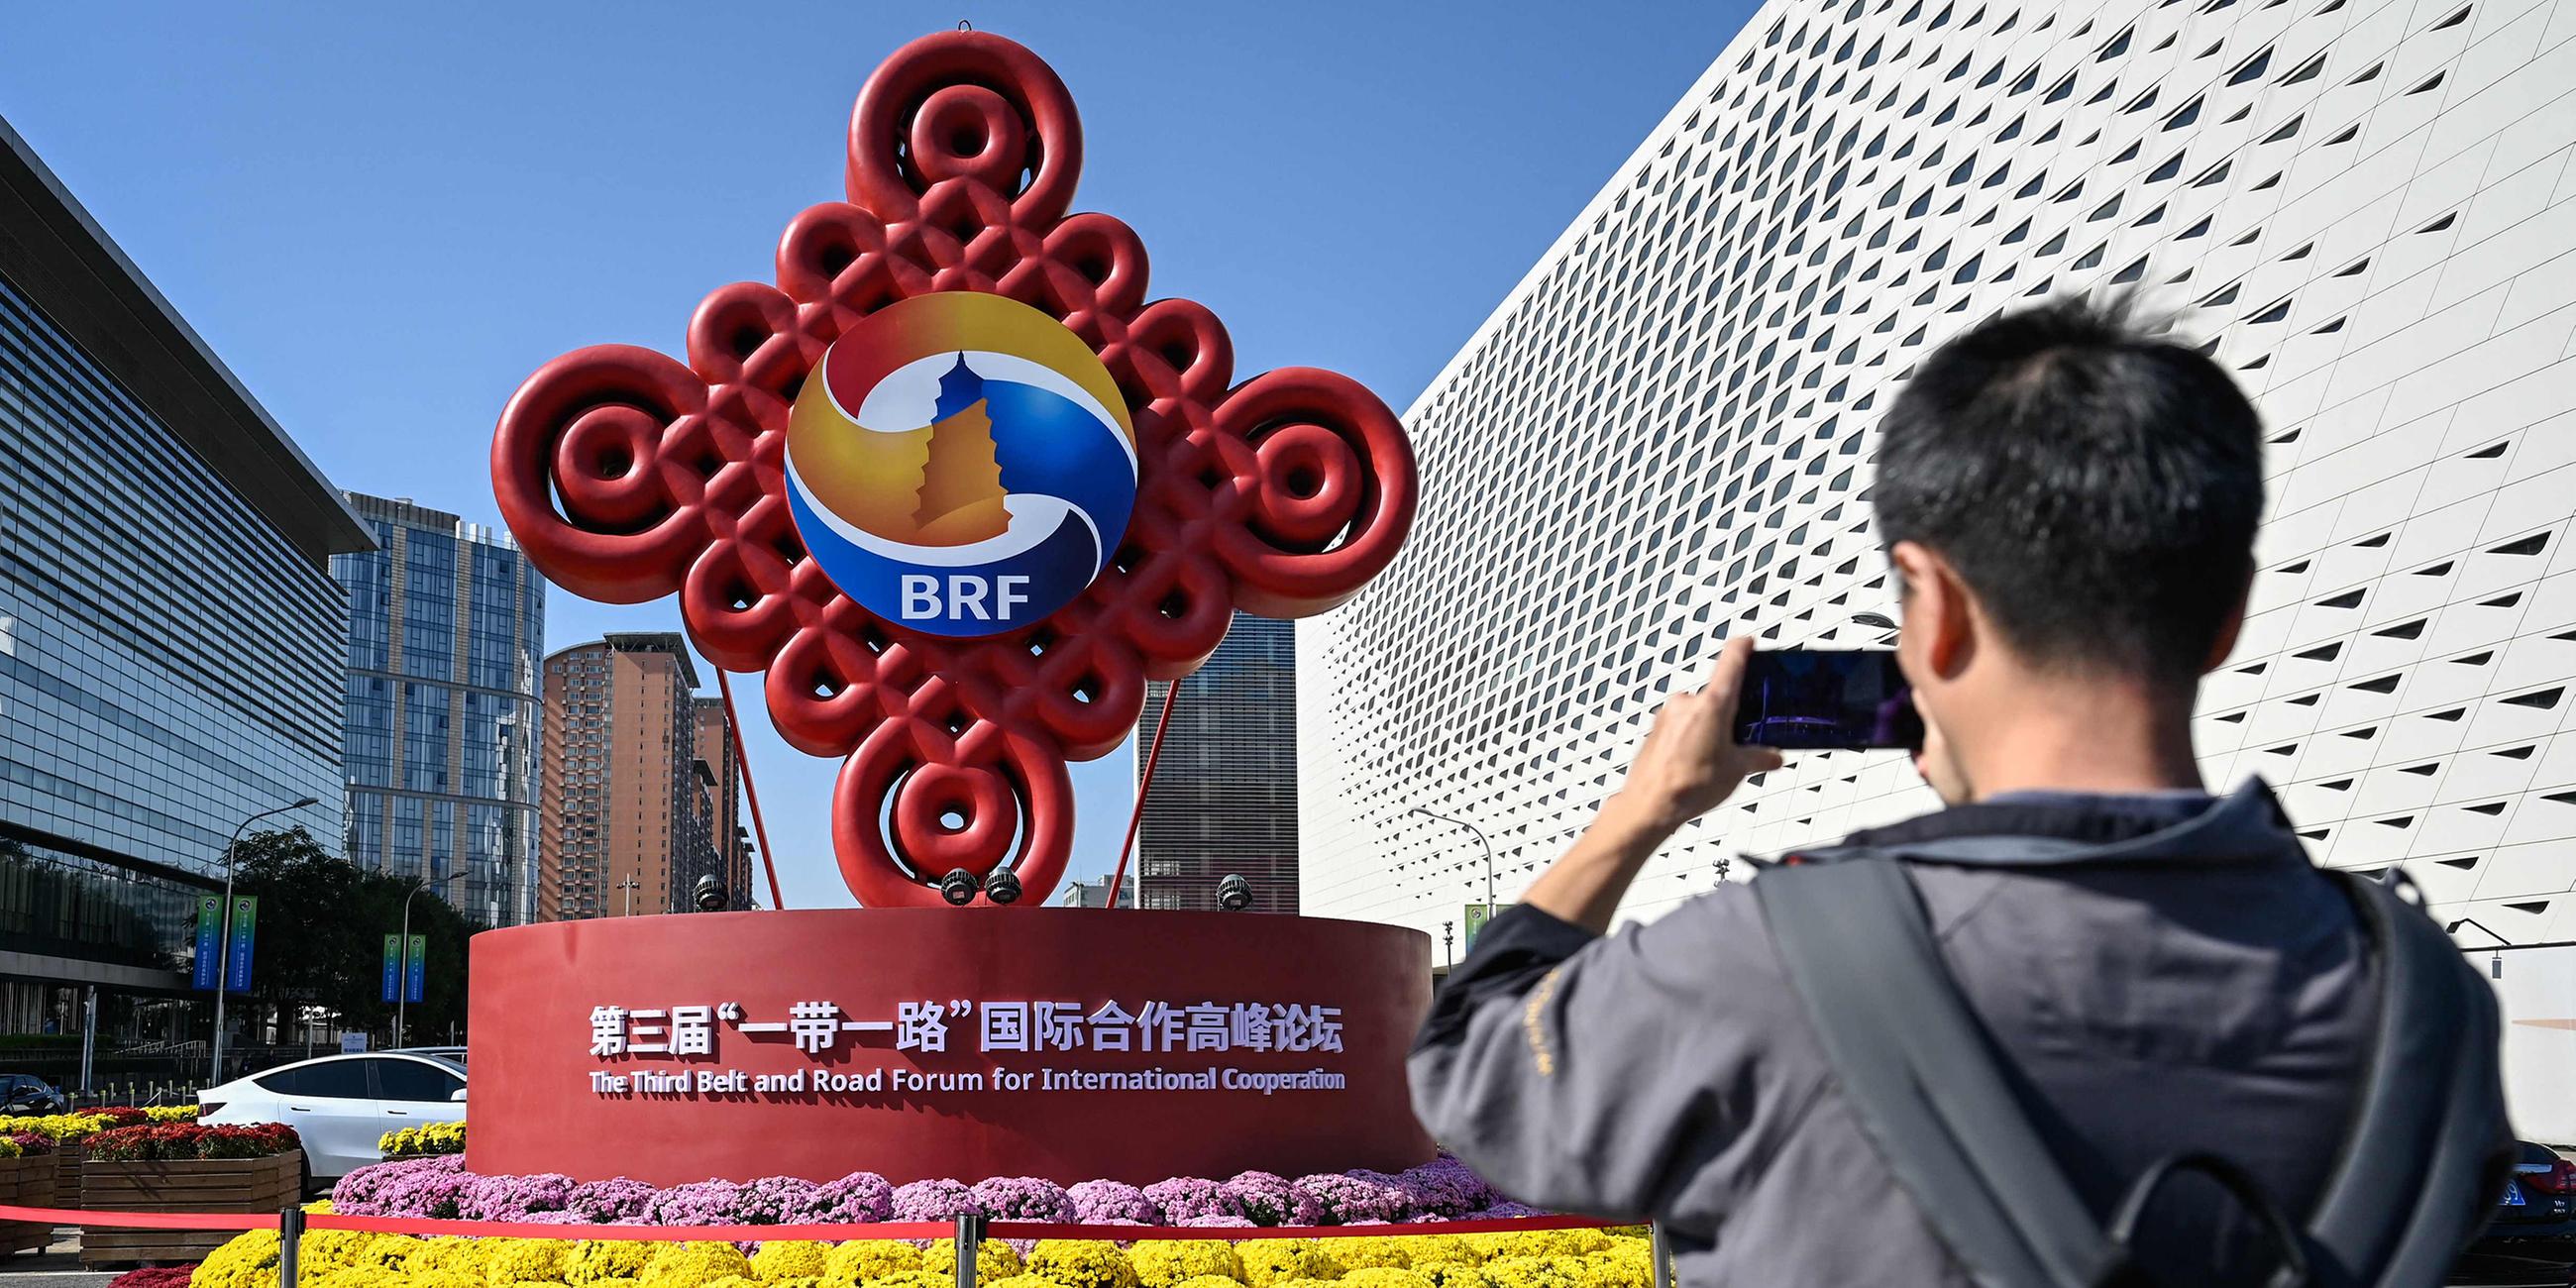 Ein Besucher fotografiert eine Installation des Belt and Road Forums in Peking